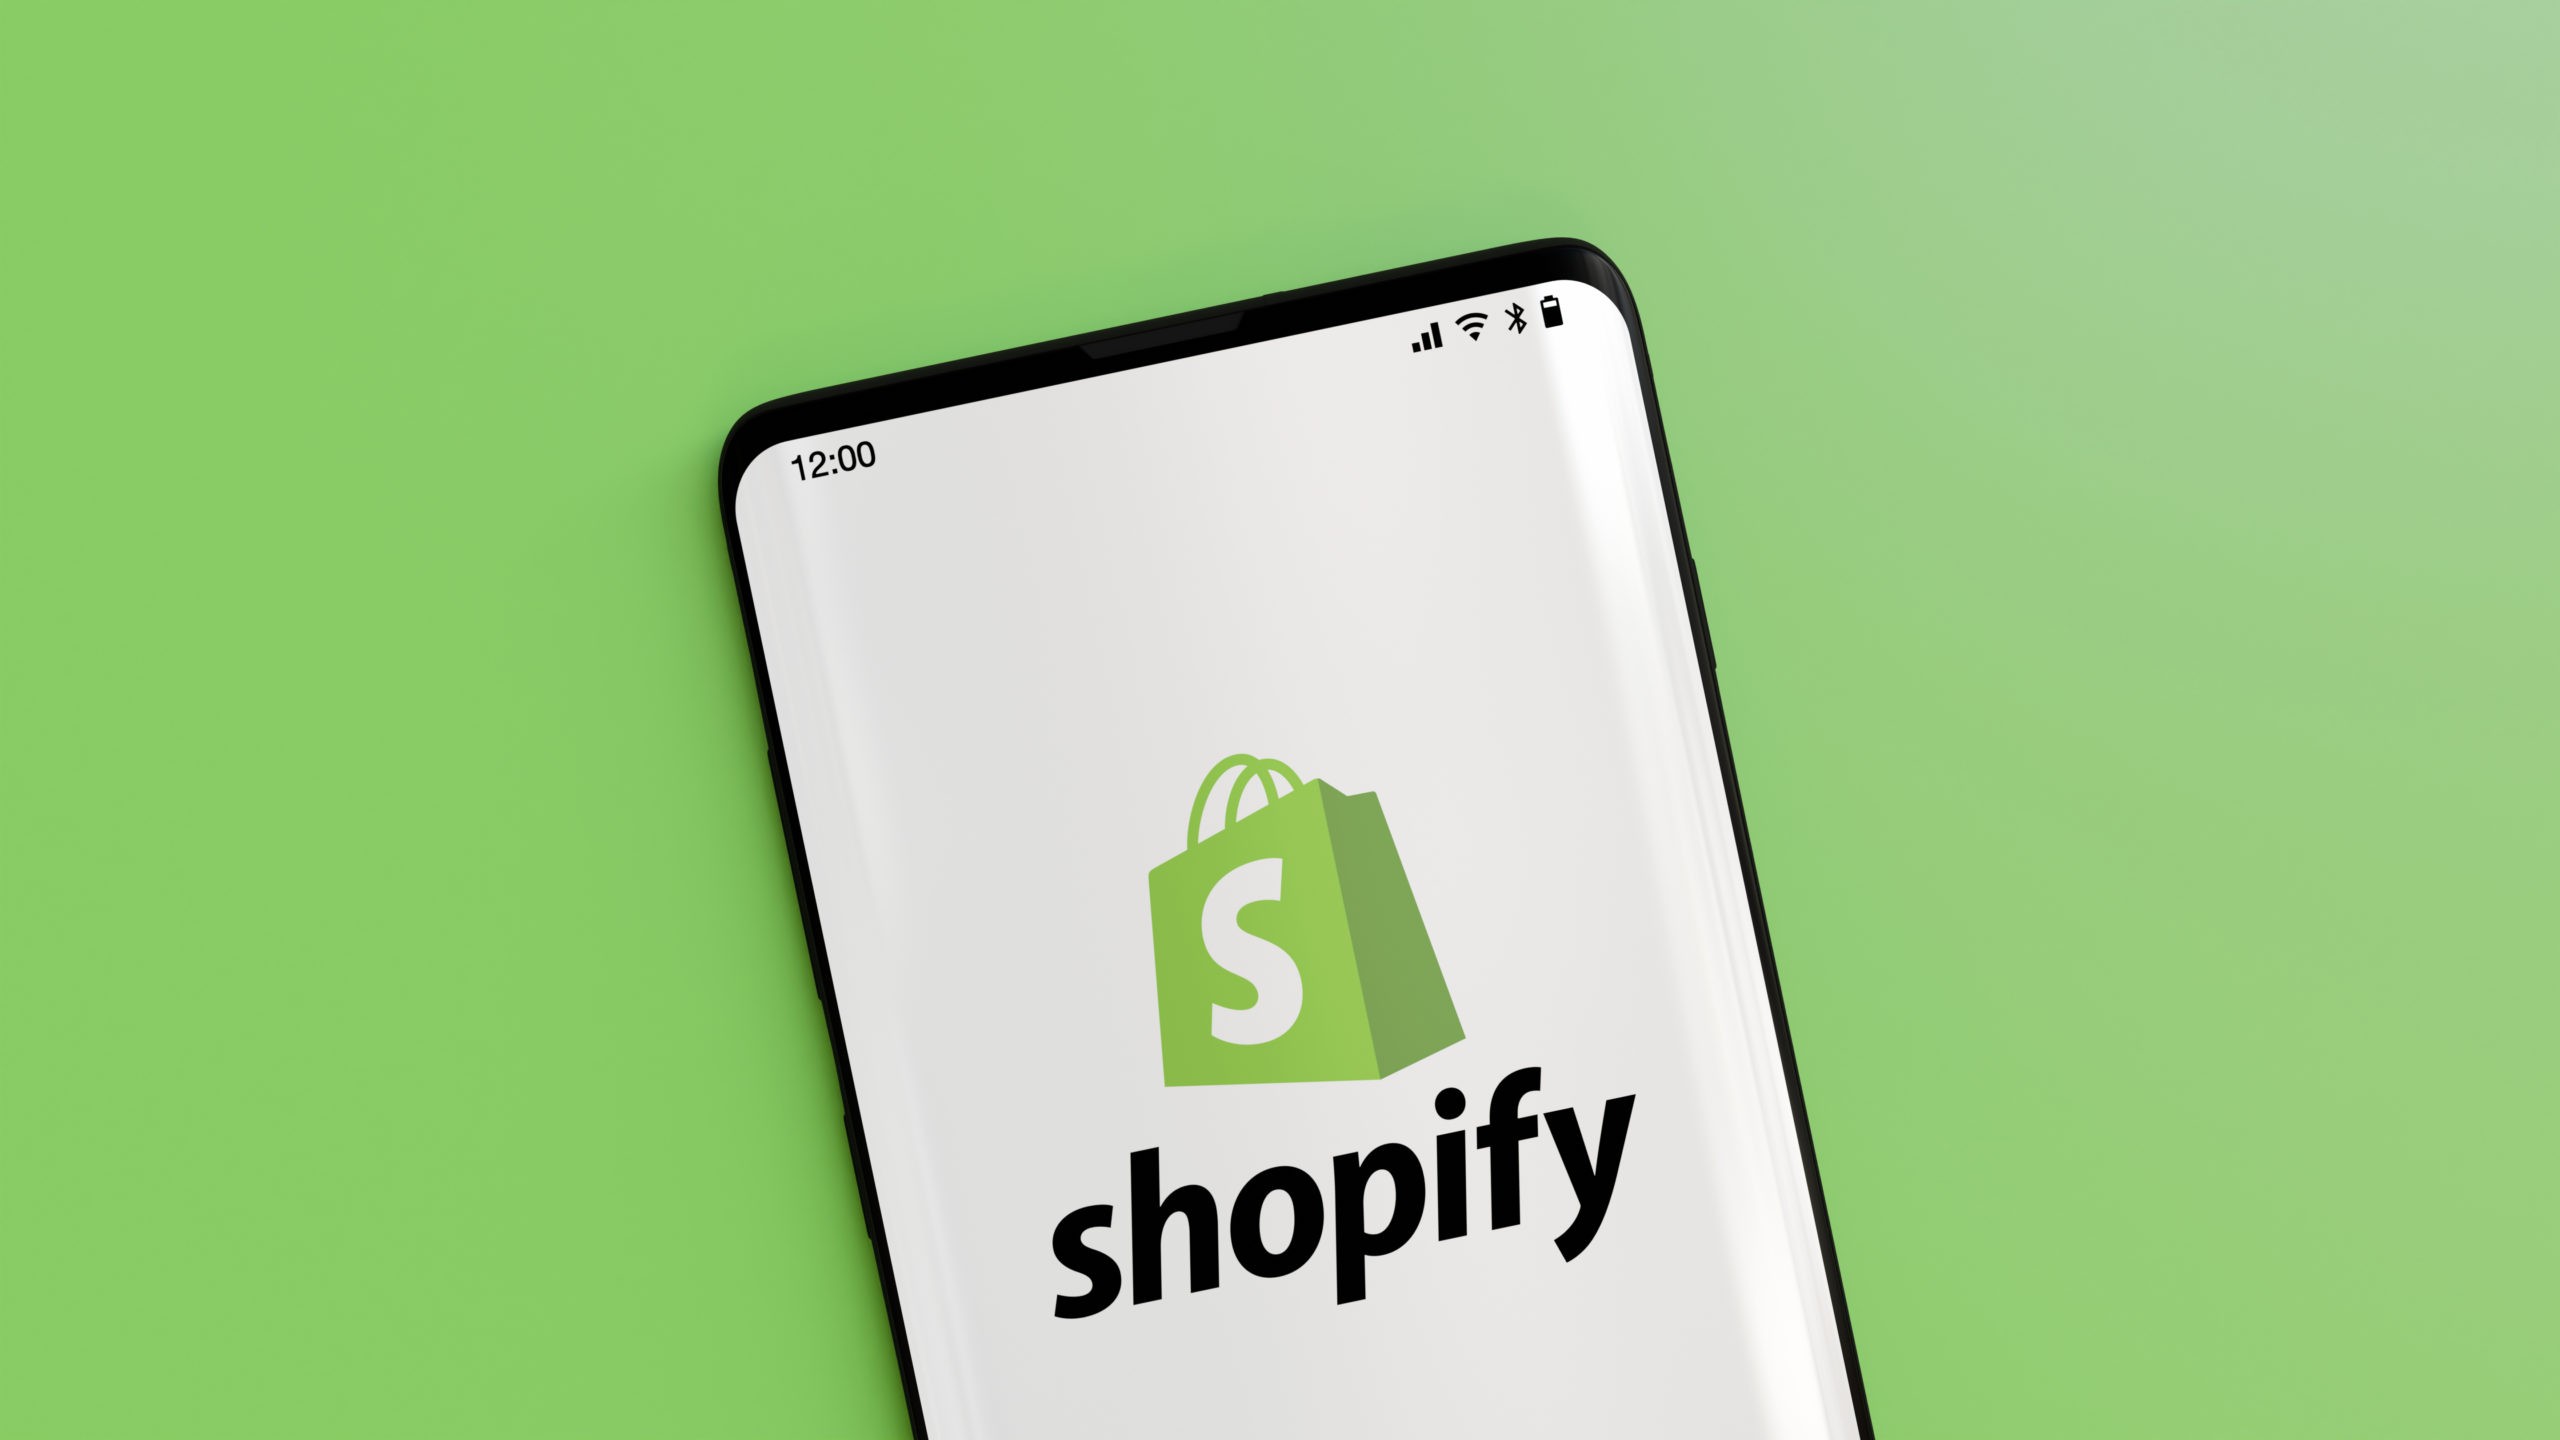 shopify payment gateway